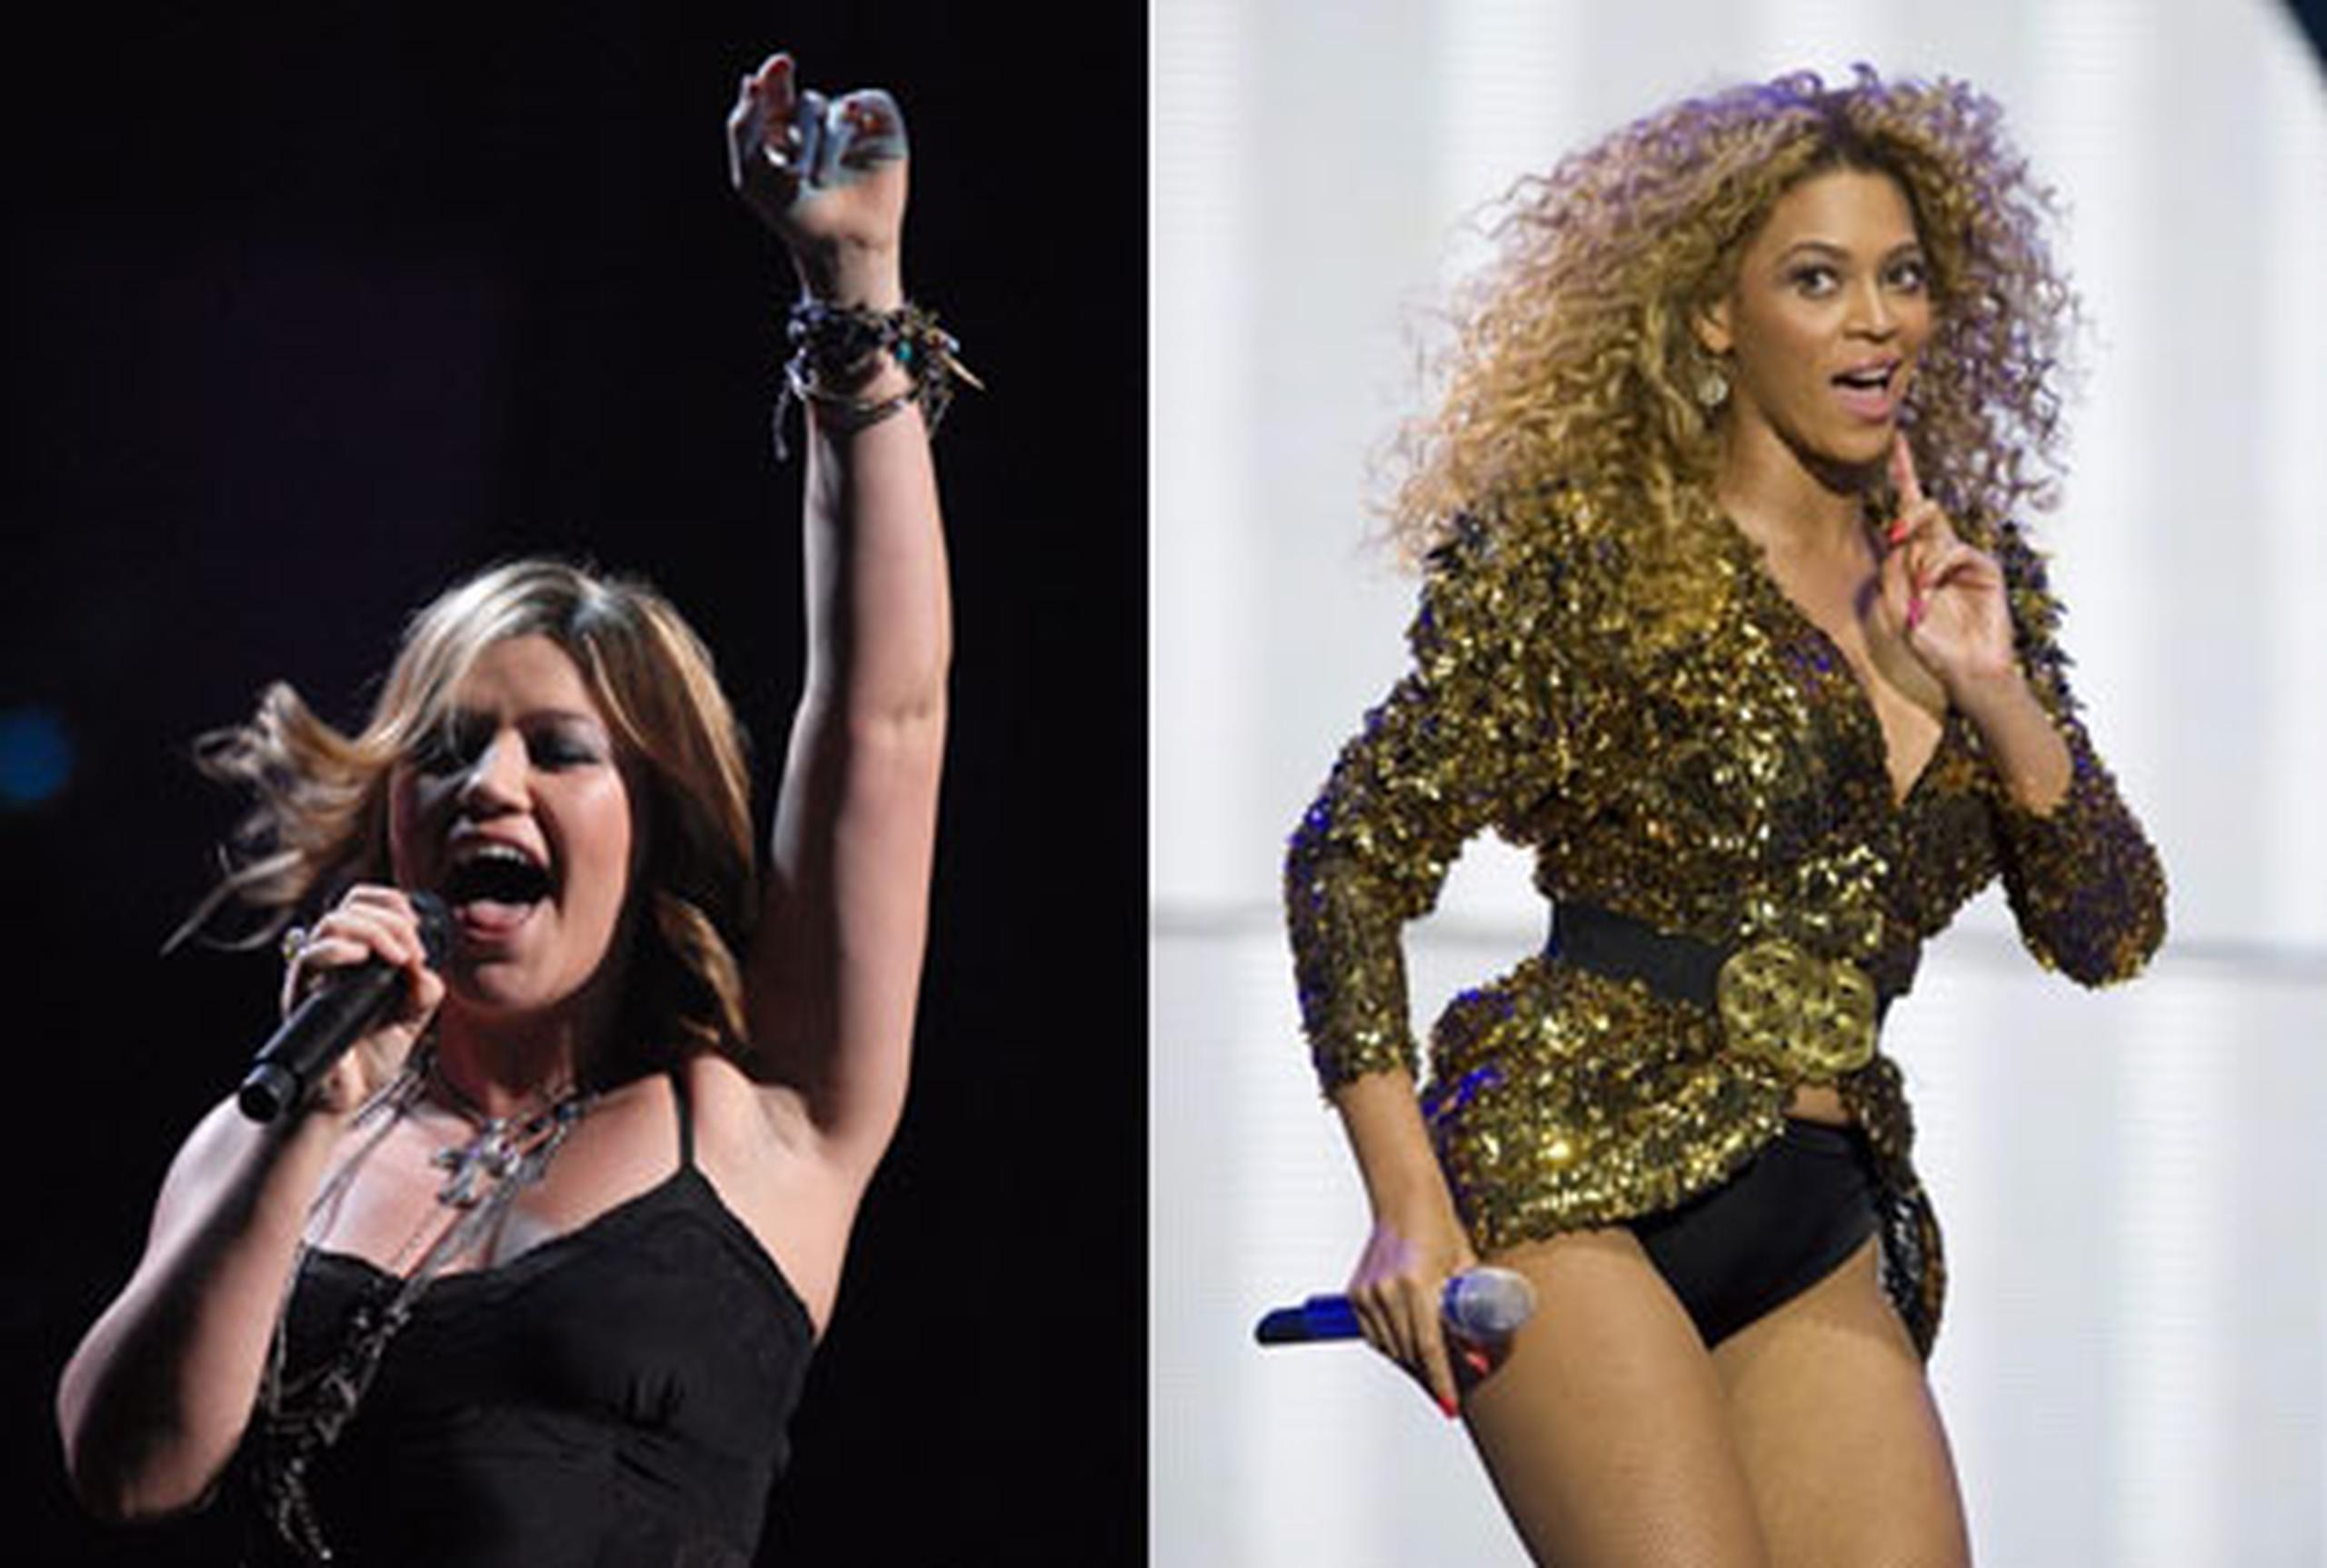 Los organizadores de la gala del 21 de enero anunciaron que Beyonce interpretará el himno nacional y Clarkson cantará "My Country 'Tis of Thee". (Archivo)